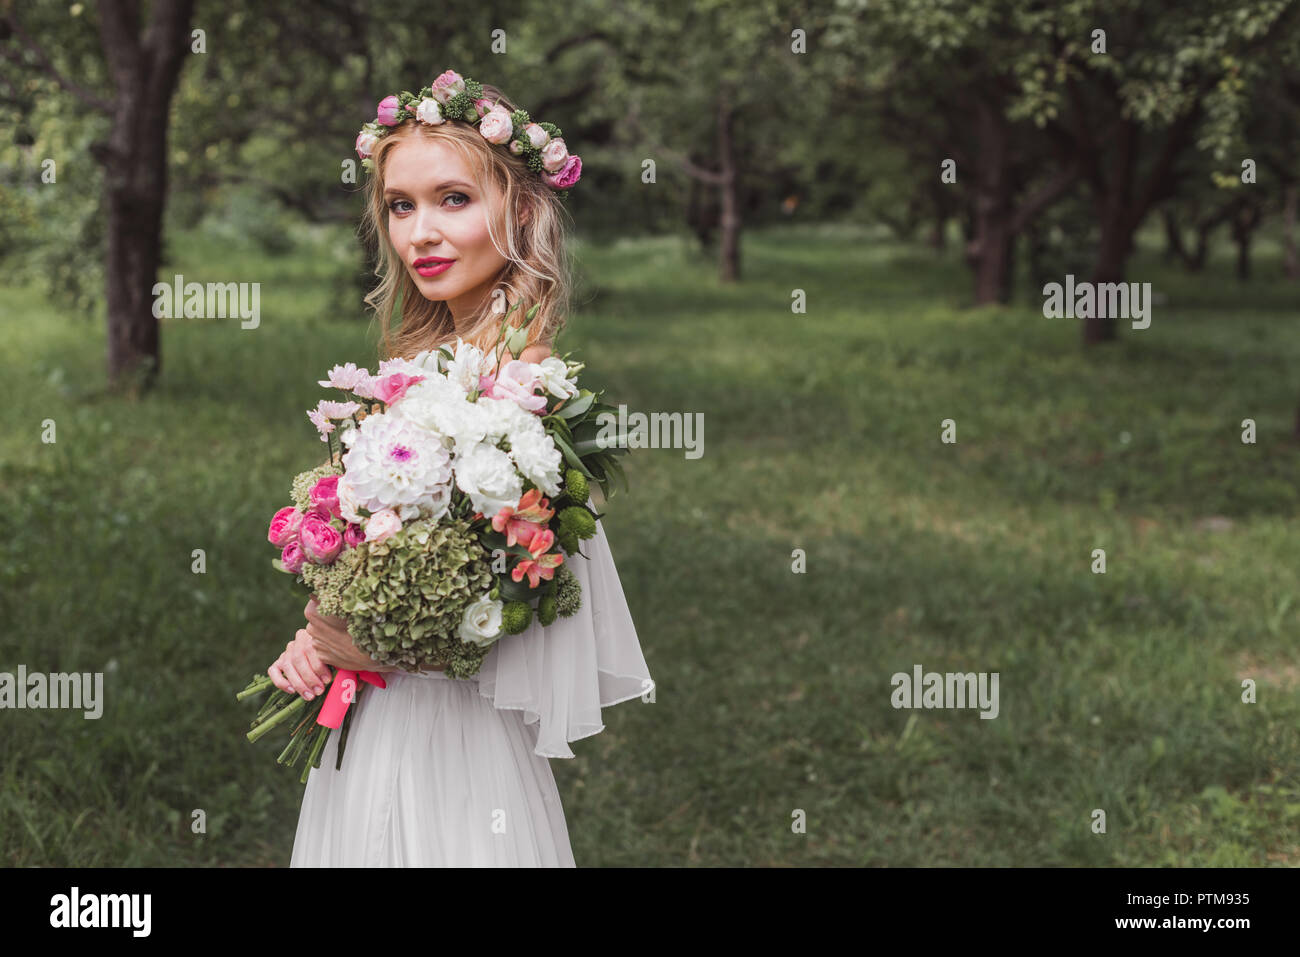 Braut in Blumen Kranz und Hochzeit Kleid mit Blumenstrauß und Kamera im Freien Stockfoto